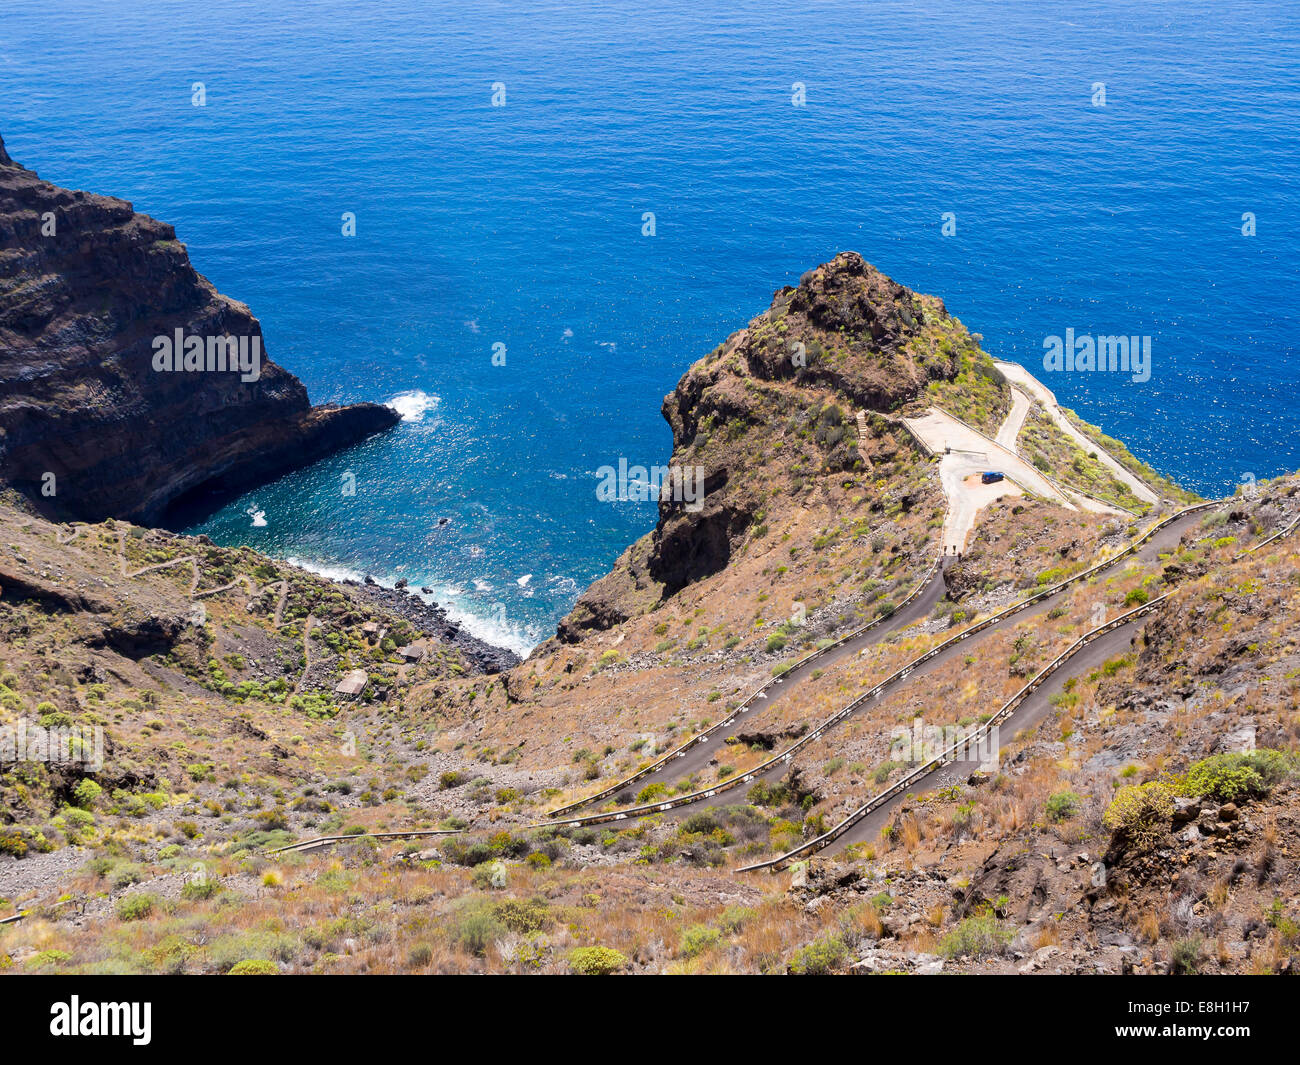 Spain, Canary Islands, La Palma, Tijarafe, cliff line at Camino del Prois Stock Photo